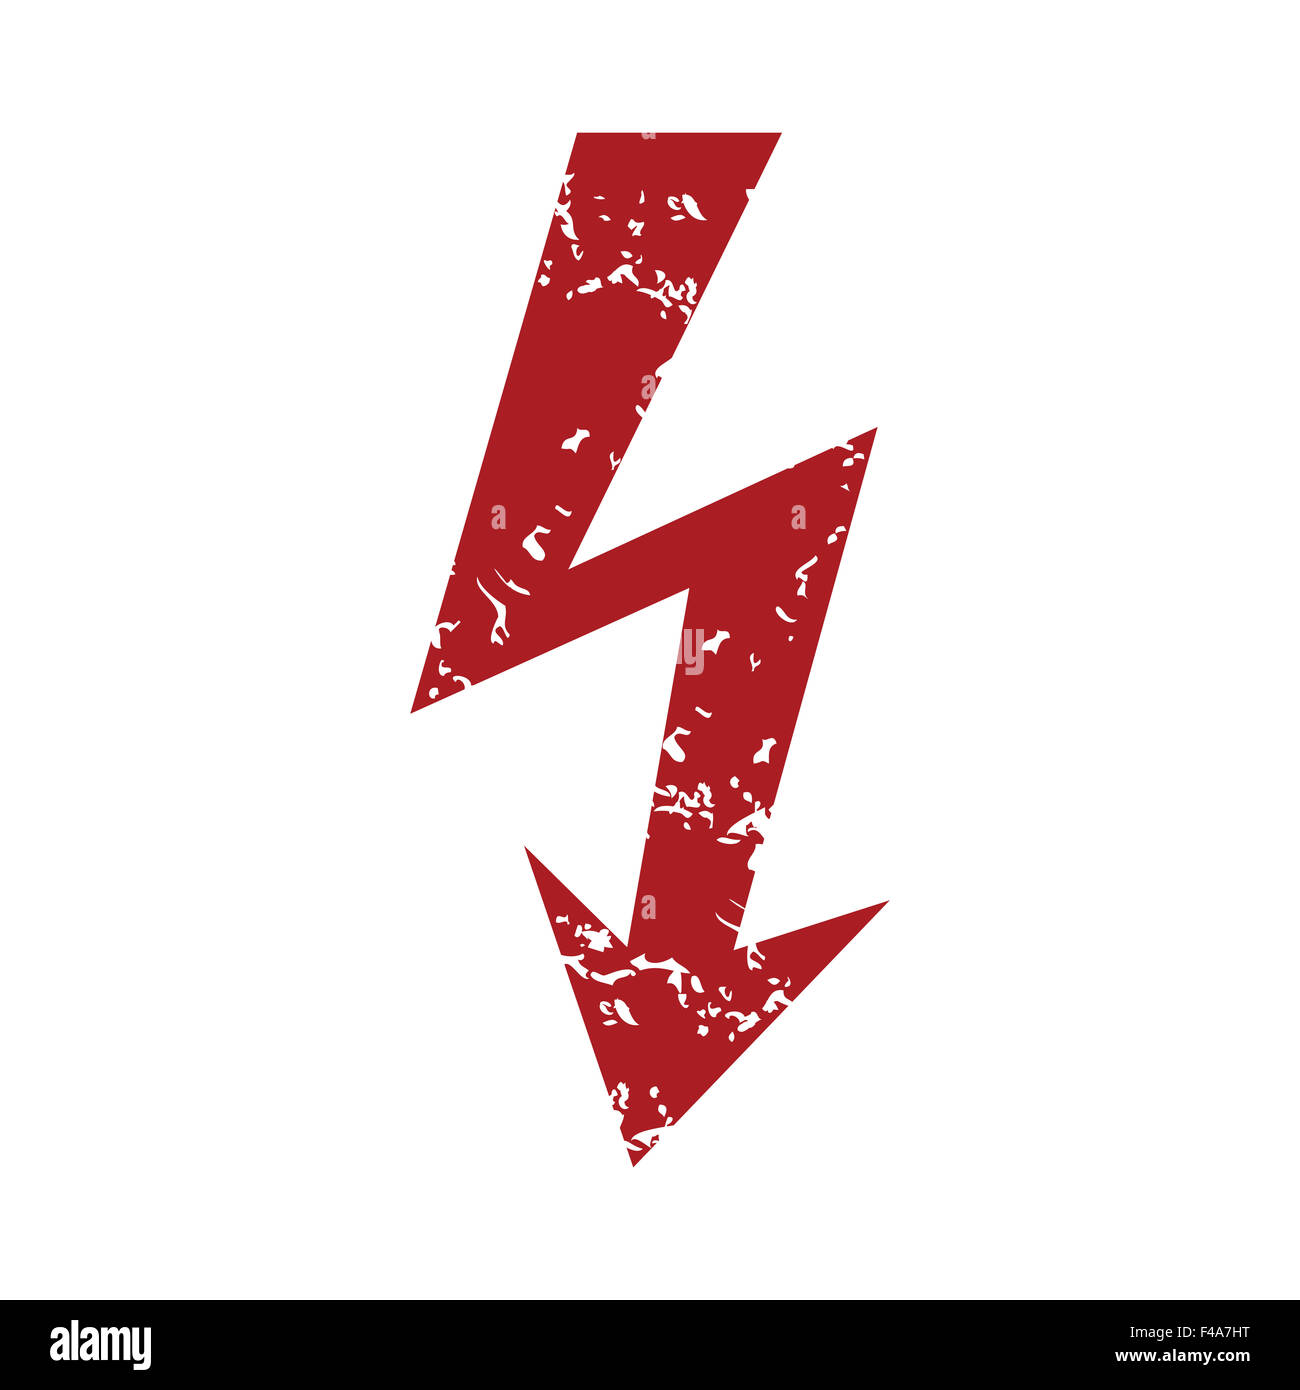 red lightning bolt logo